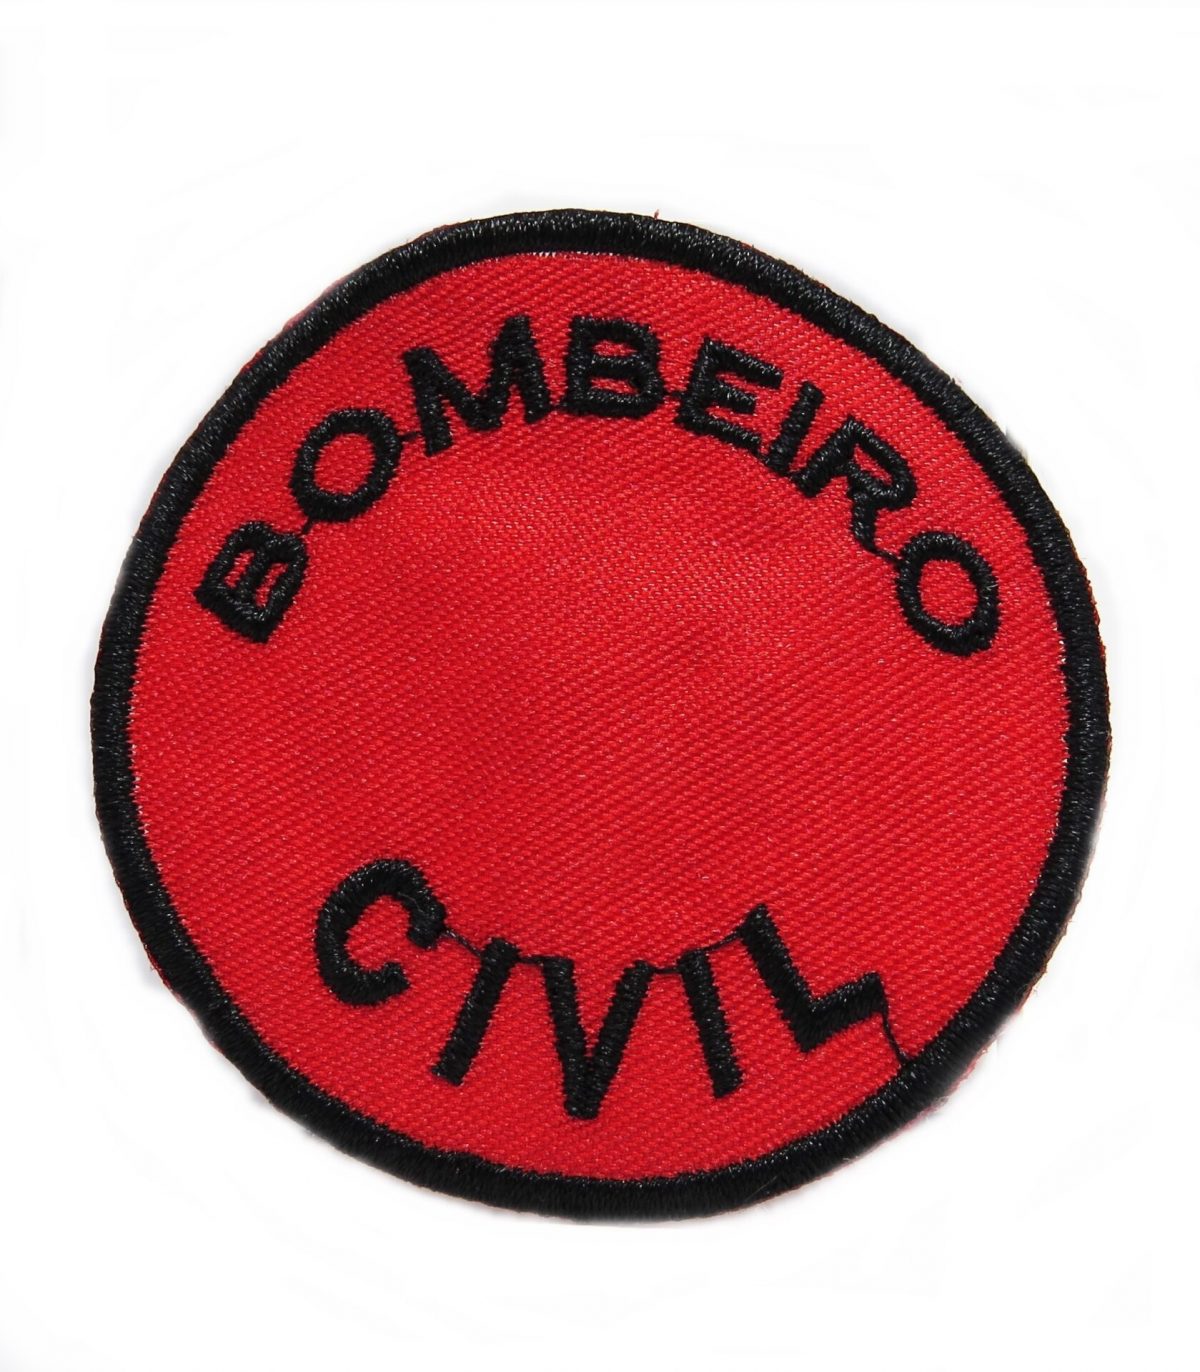 00324 bordado bobemiro civil fundo vermelho - Couro Art Bombeiro Civil, Saúde e Tático